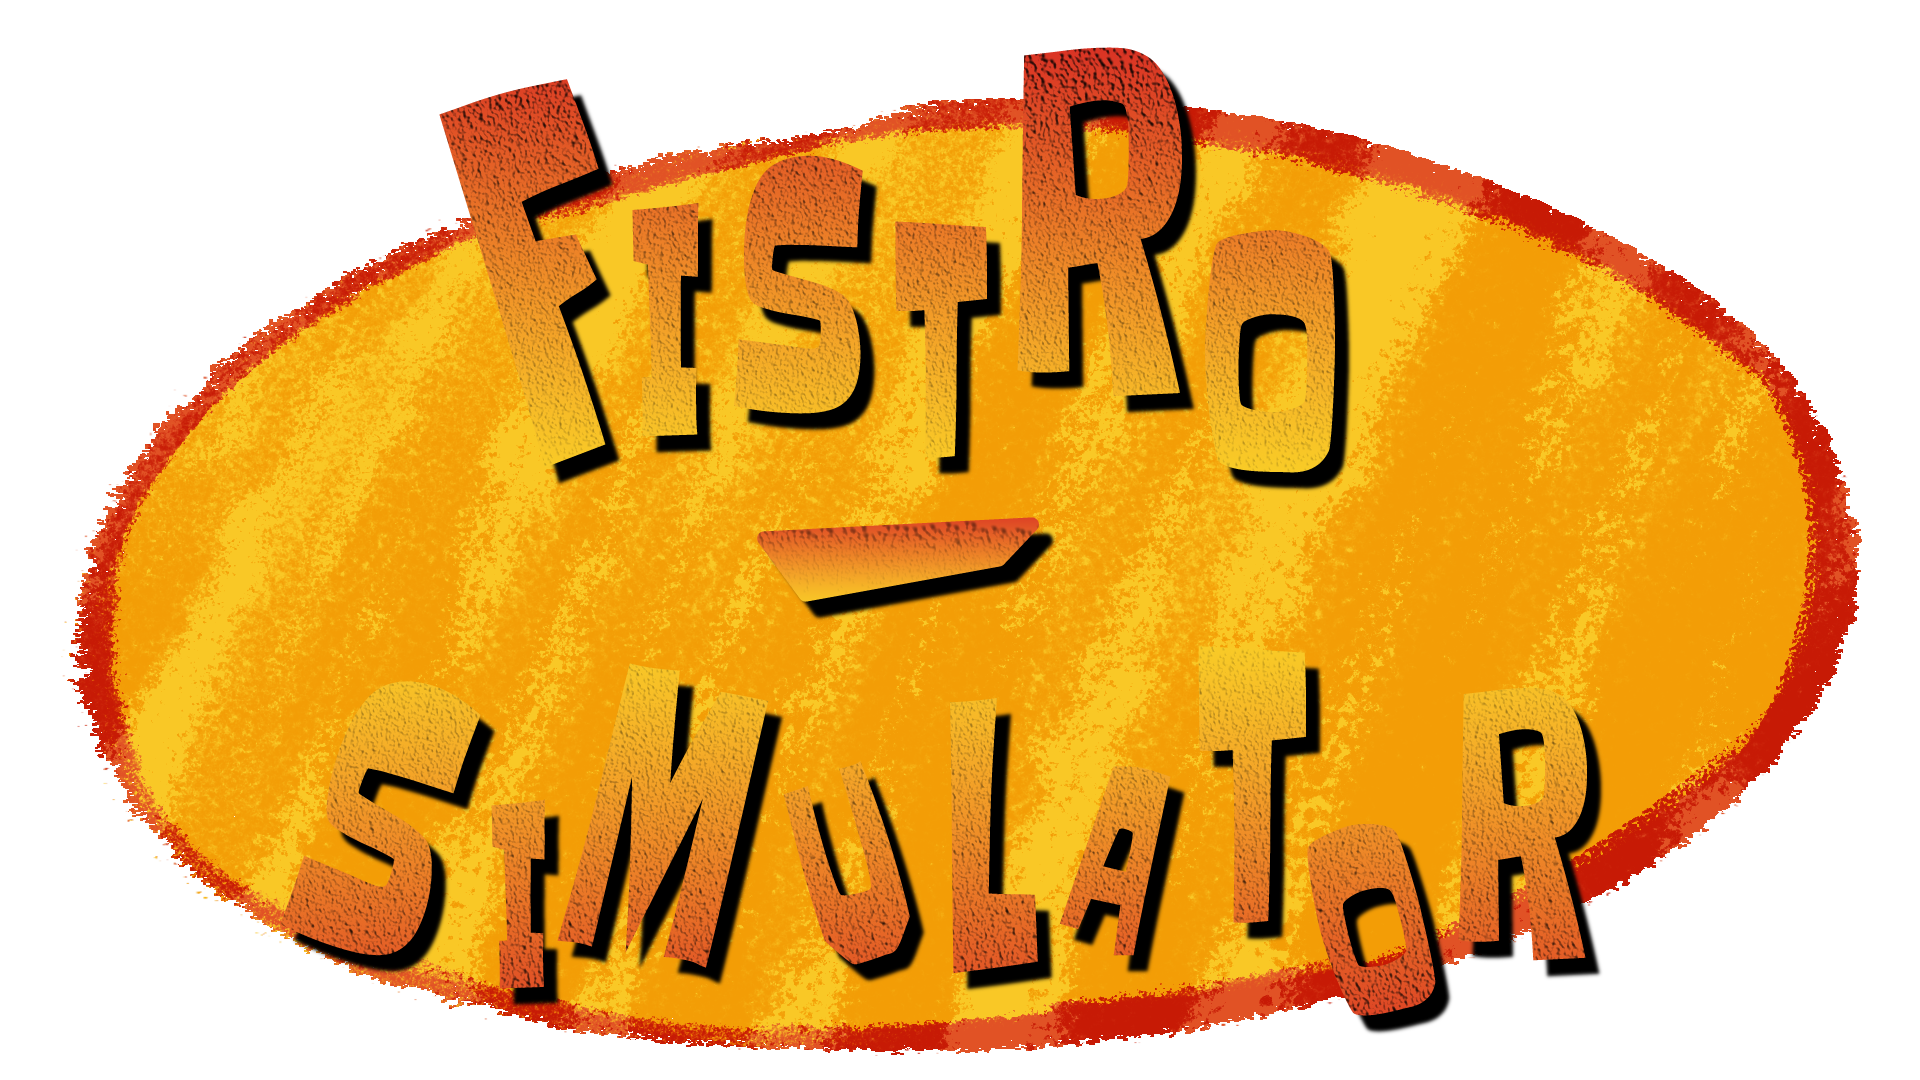 Fistro Simulator